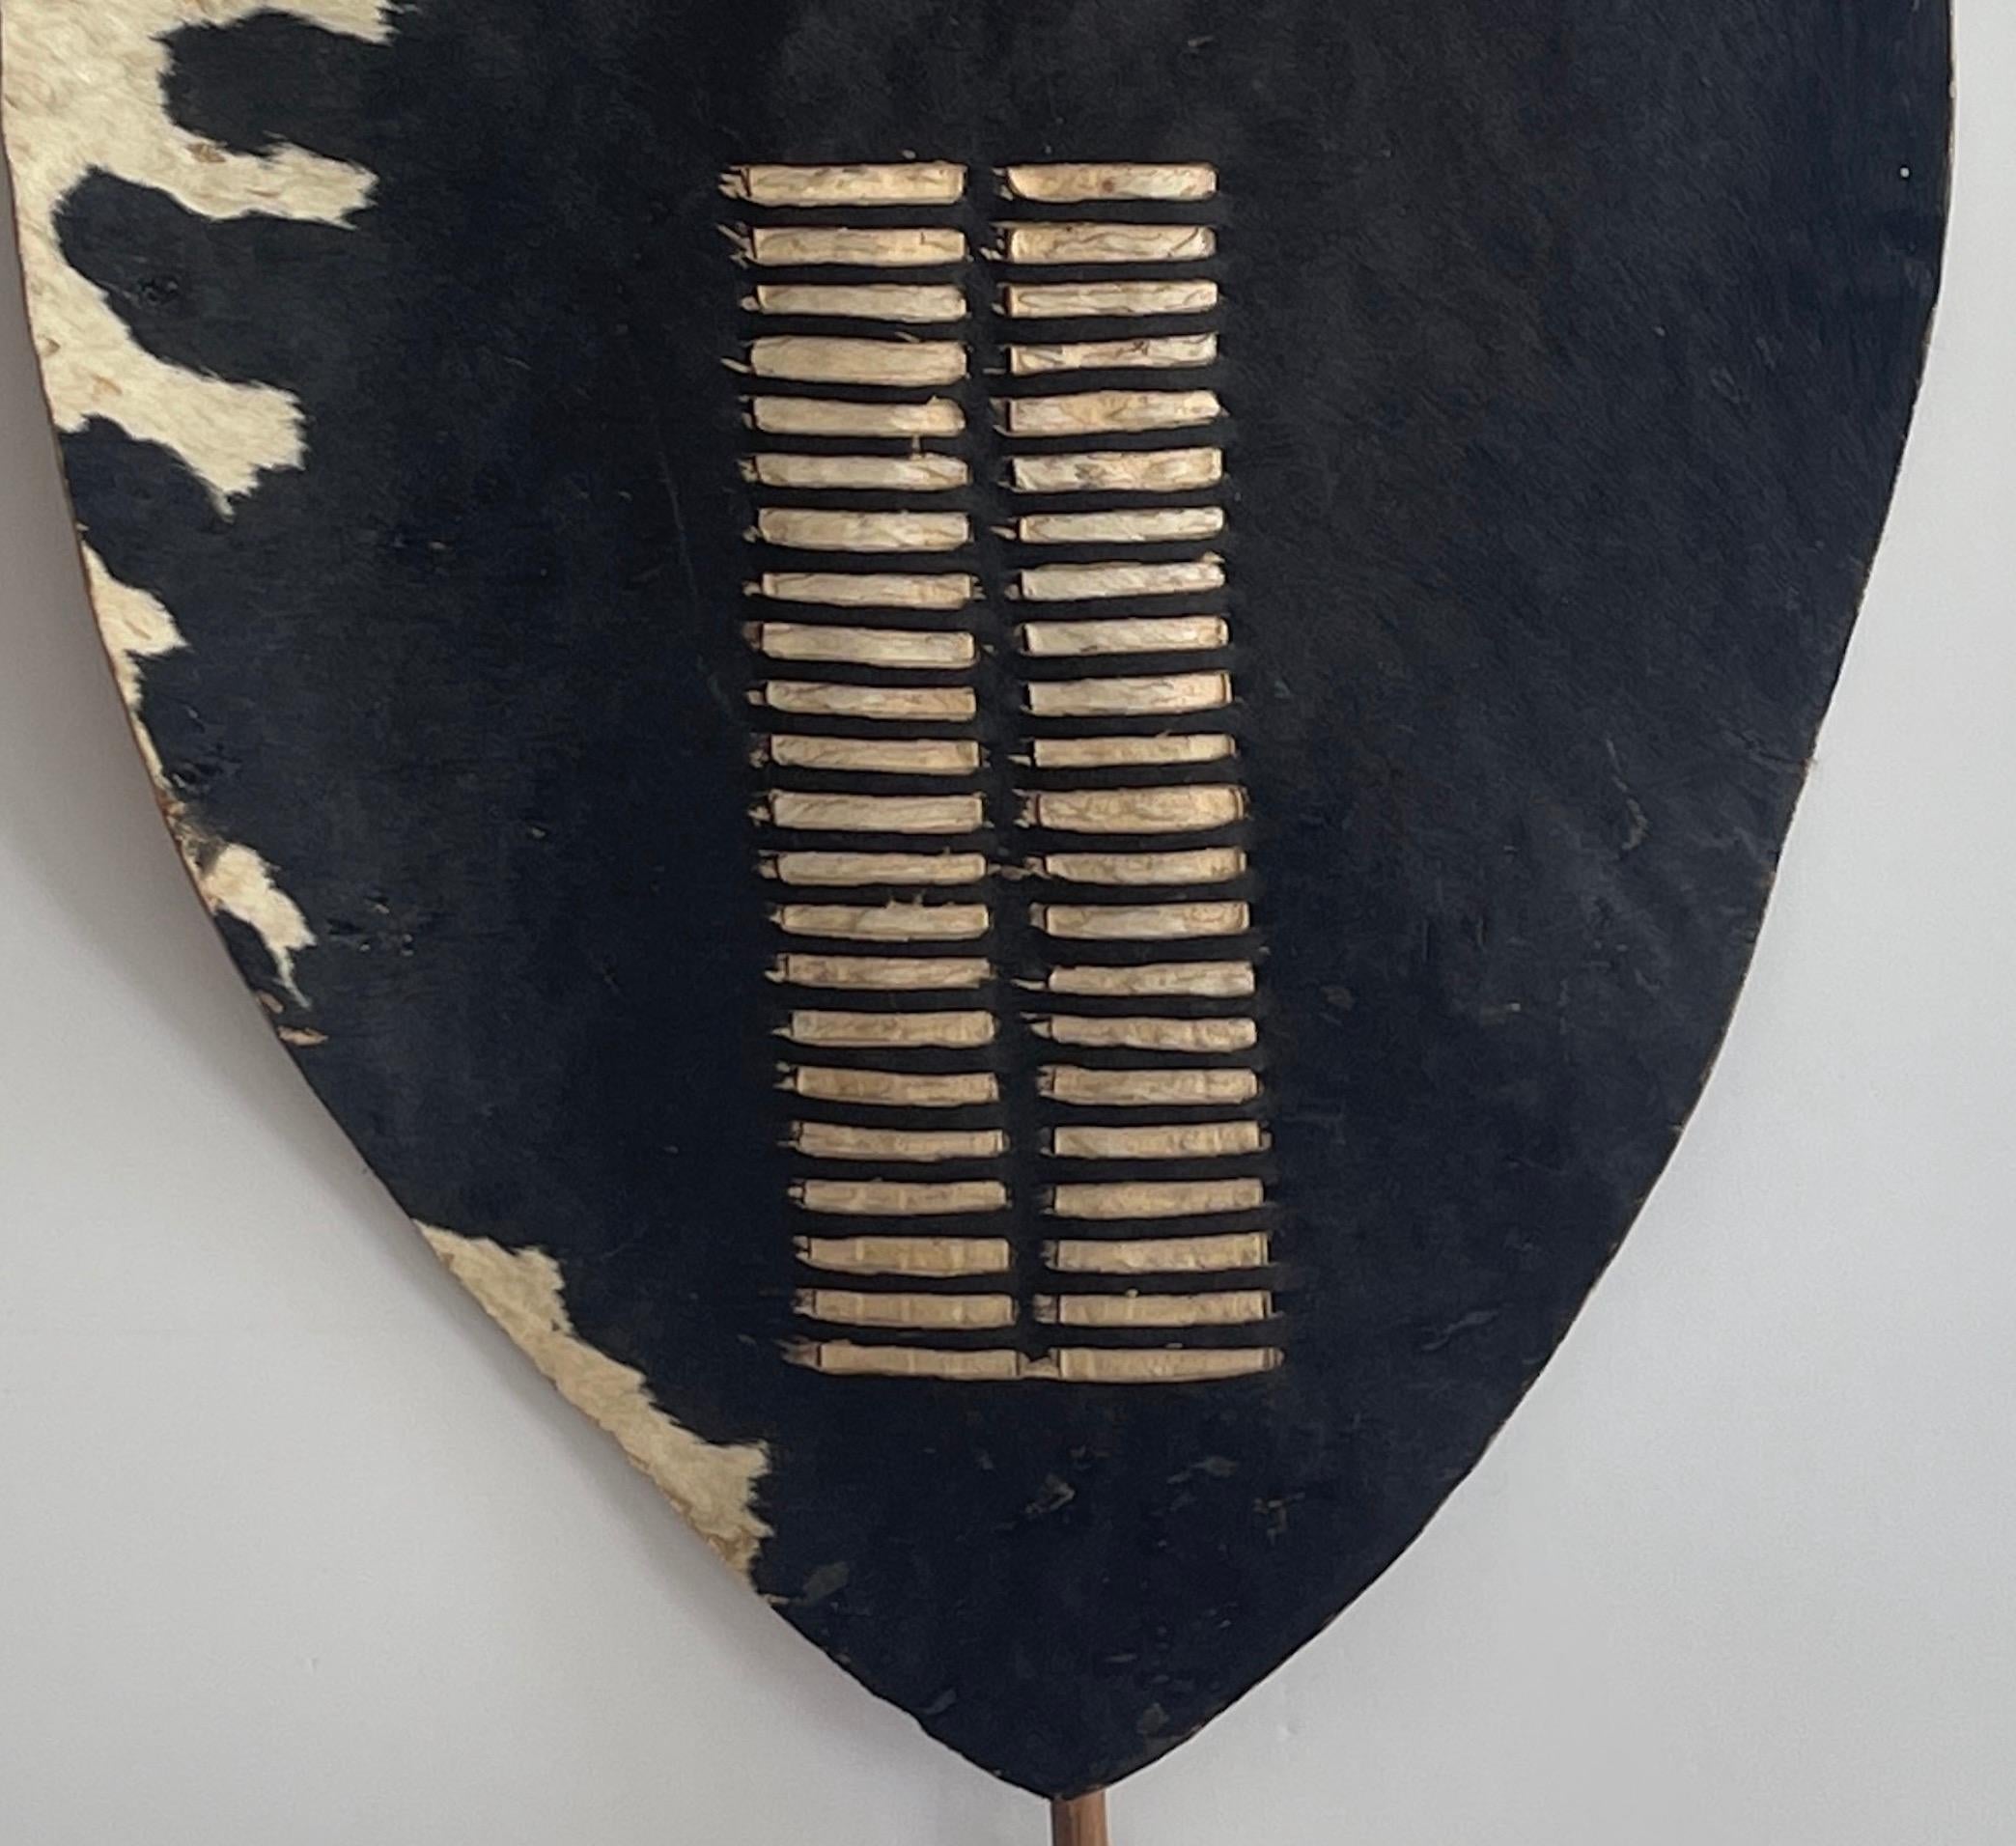 zulu shield for sale